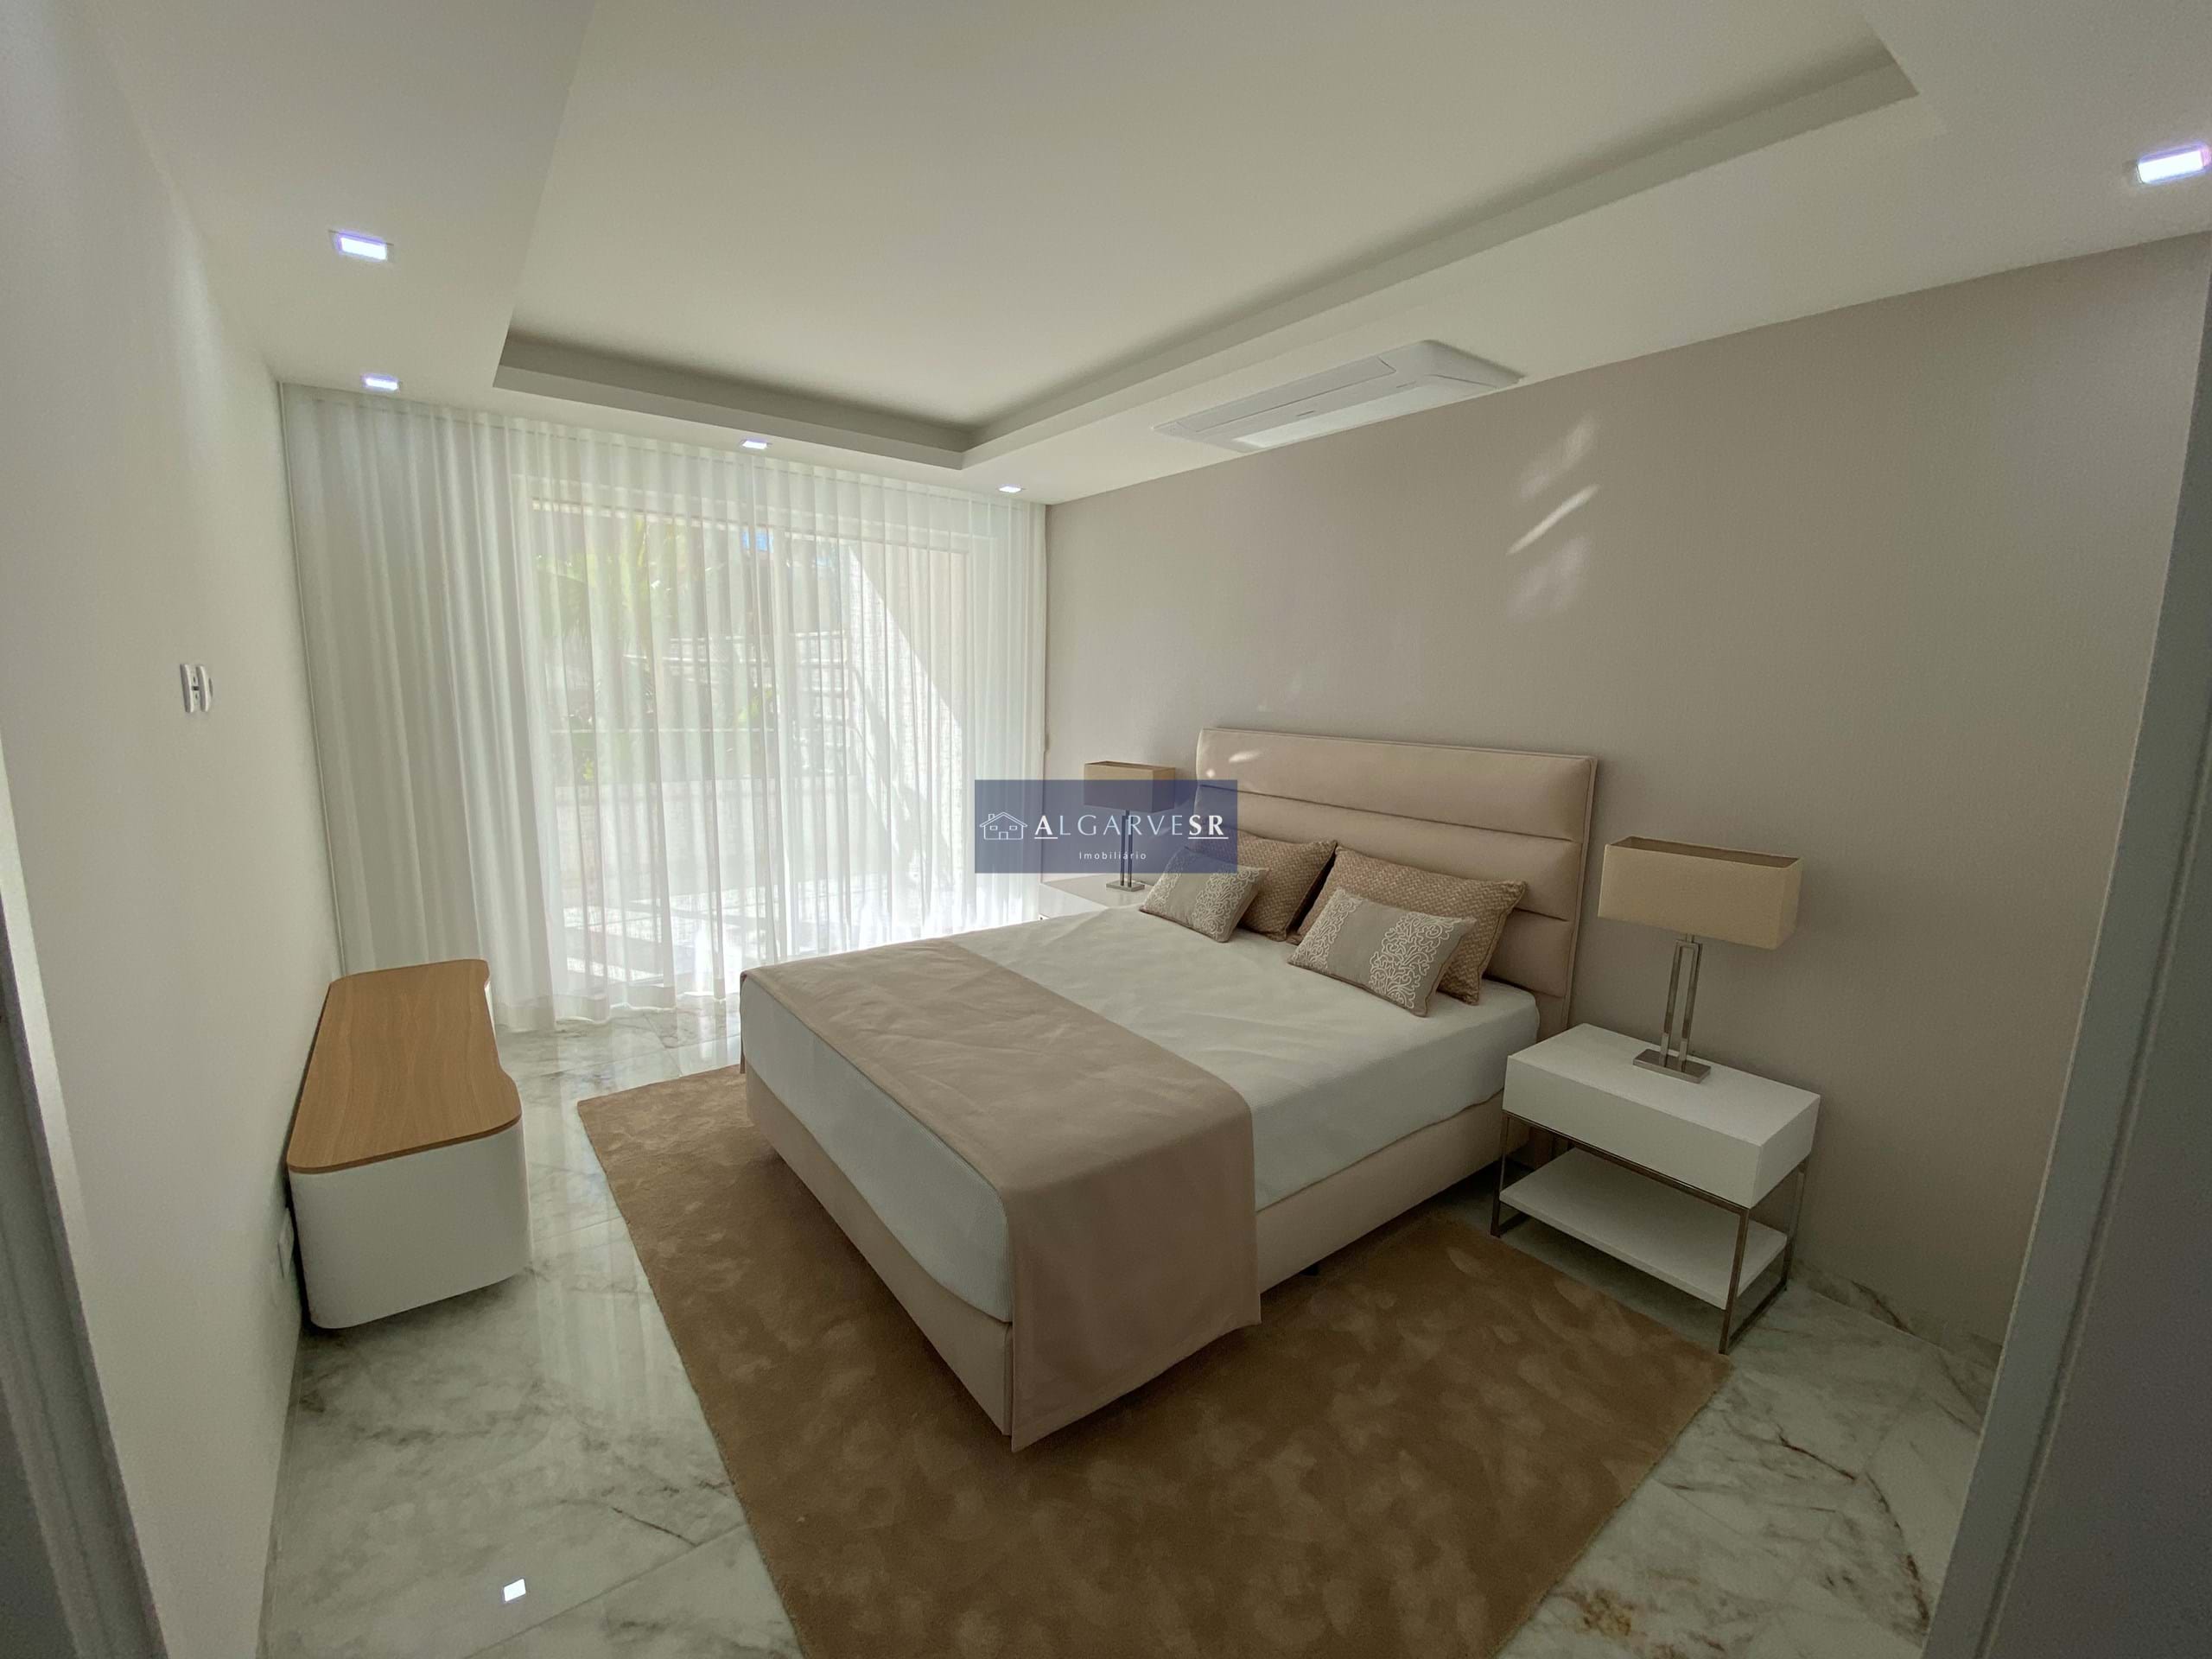 Lagos - ApartamentosT3 Novo em condominio de luxo c/ piscina